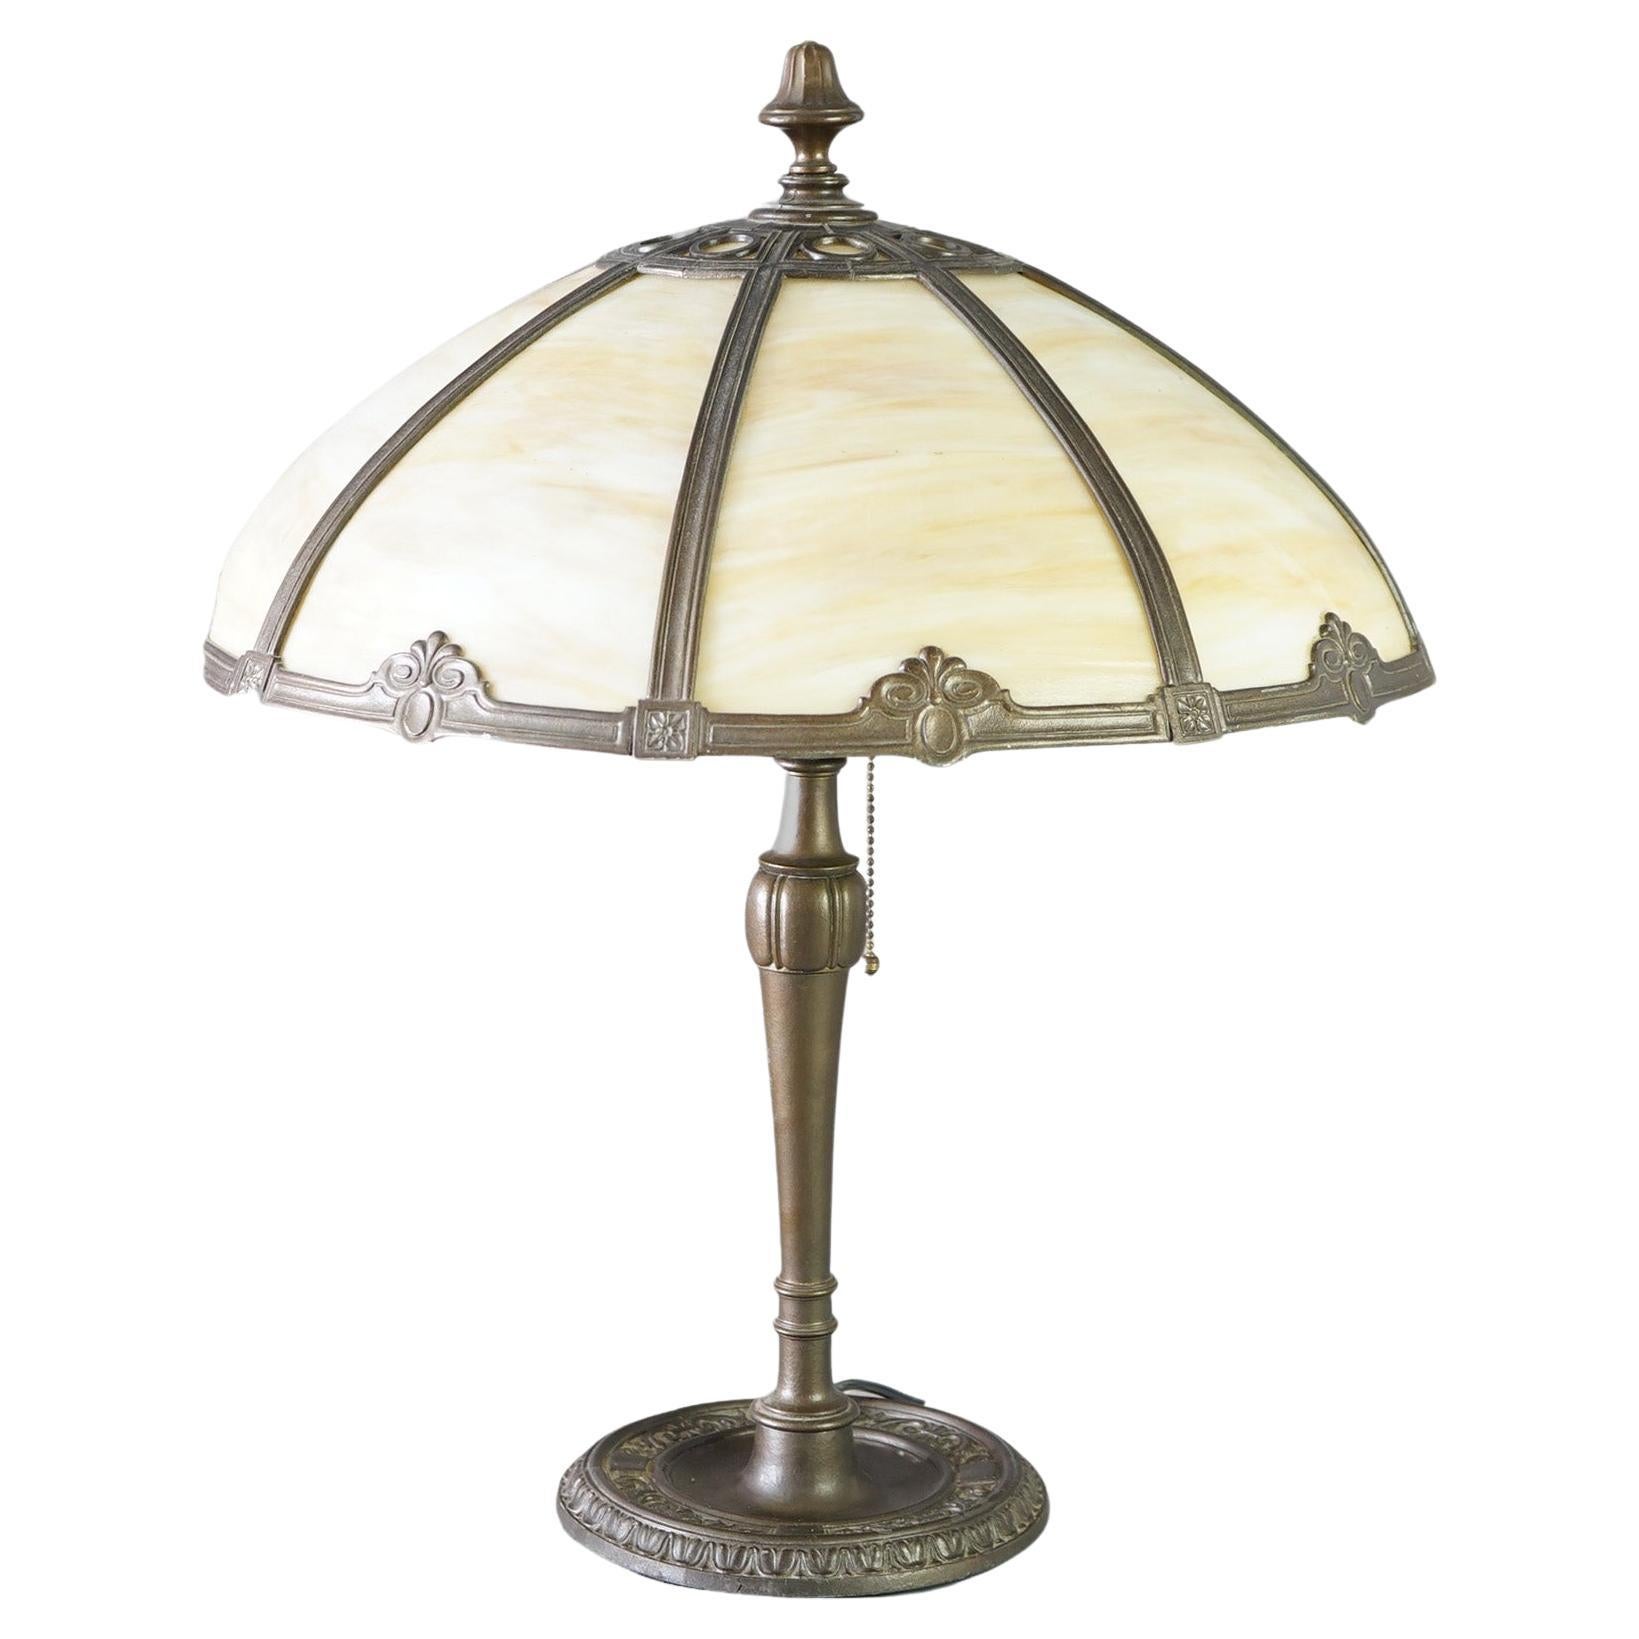 Lampe de table ancienne en verre de style Arts & Crafts datant d'environ 1920